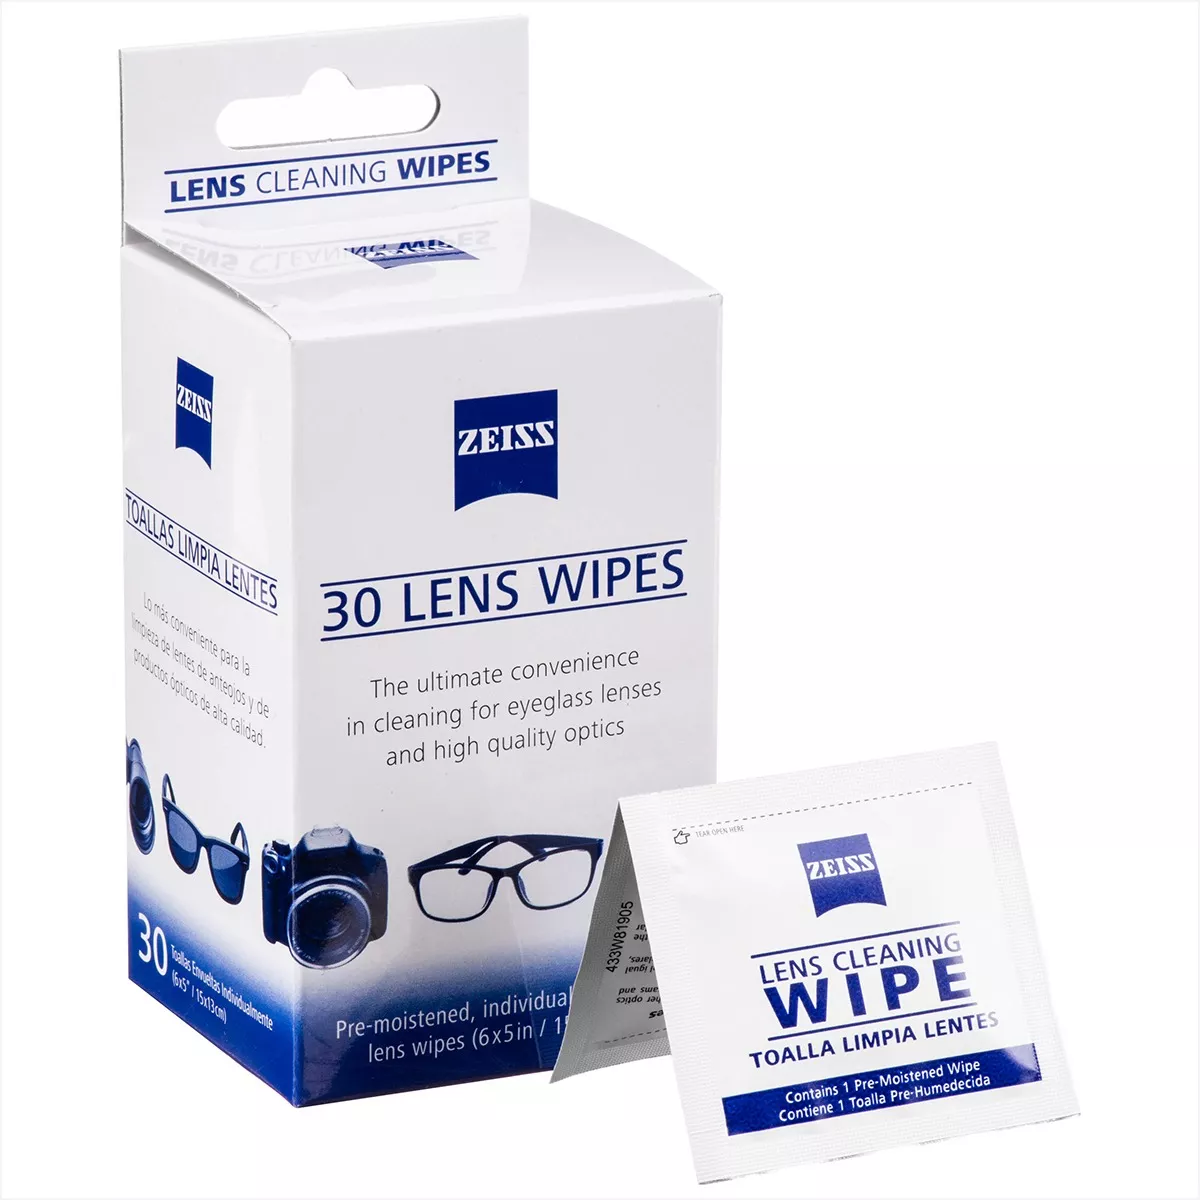 Terceira imagem para pesquisa de lens wipes